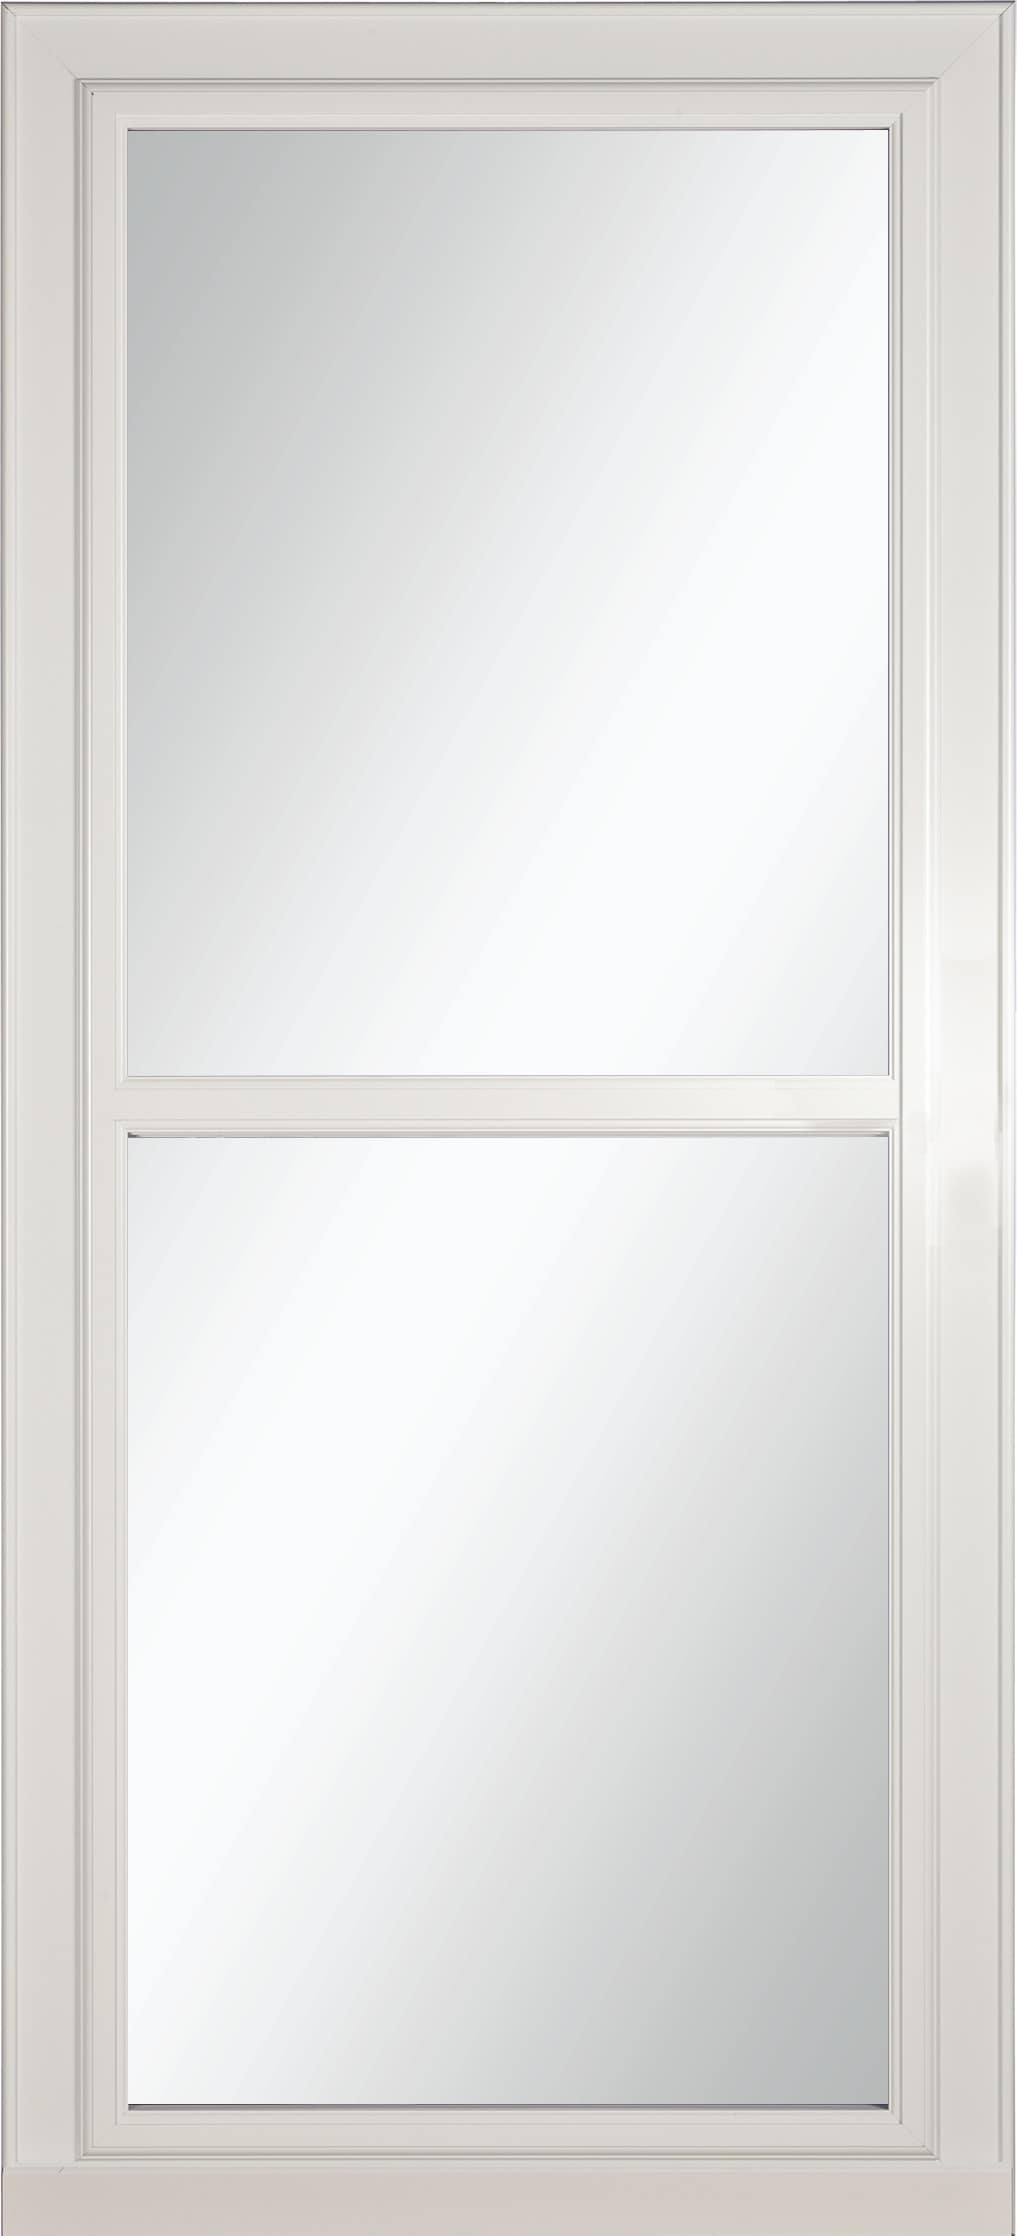 Tradewinds Selection 36-in x 81-in White Full-view Retractable Screen Aluminum Storm Door | - LARSON 14604032